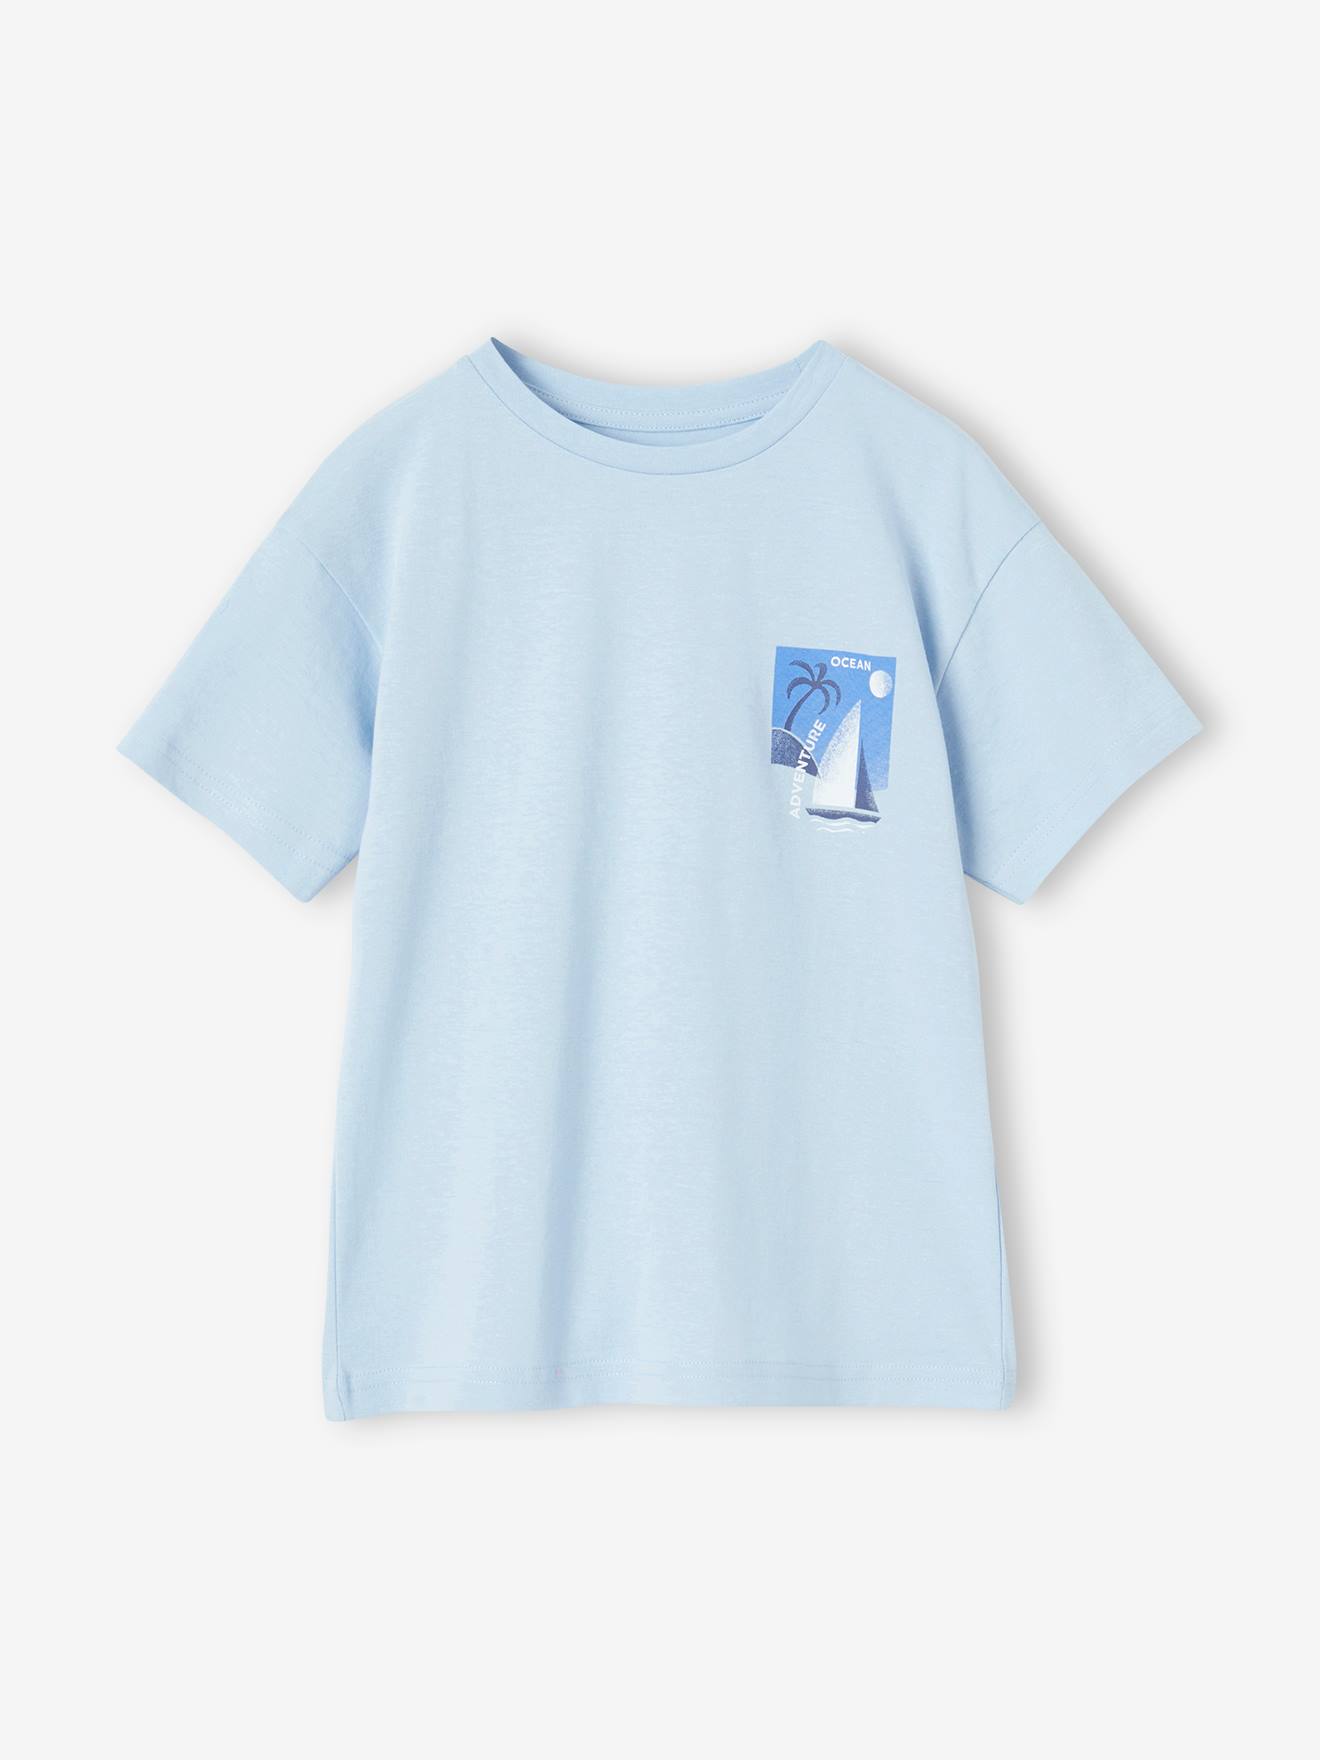 T-shirt met maxi motief op de rug voor jongens hemelsblauw